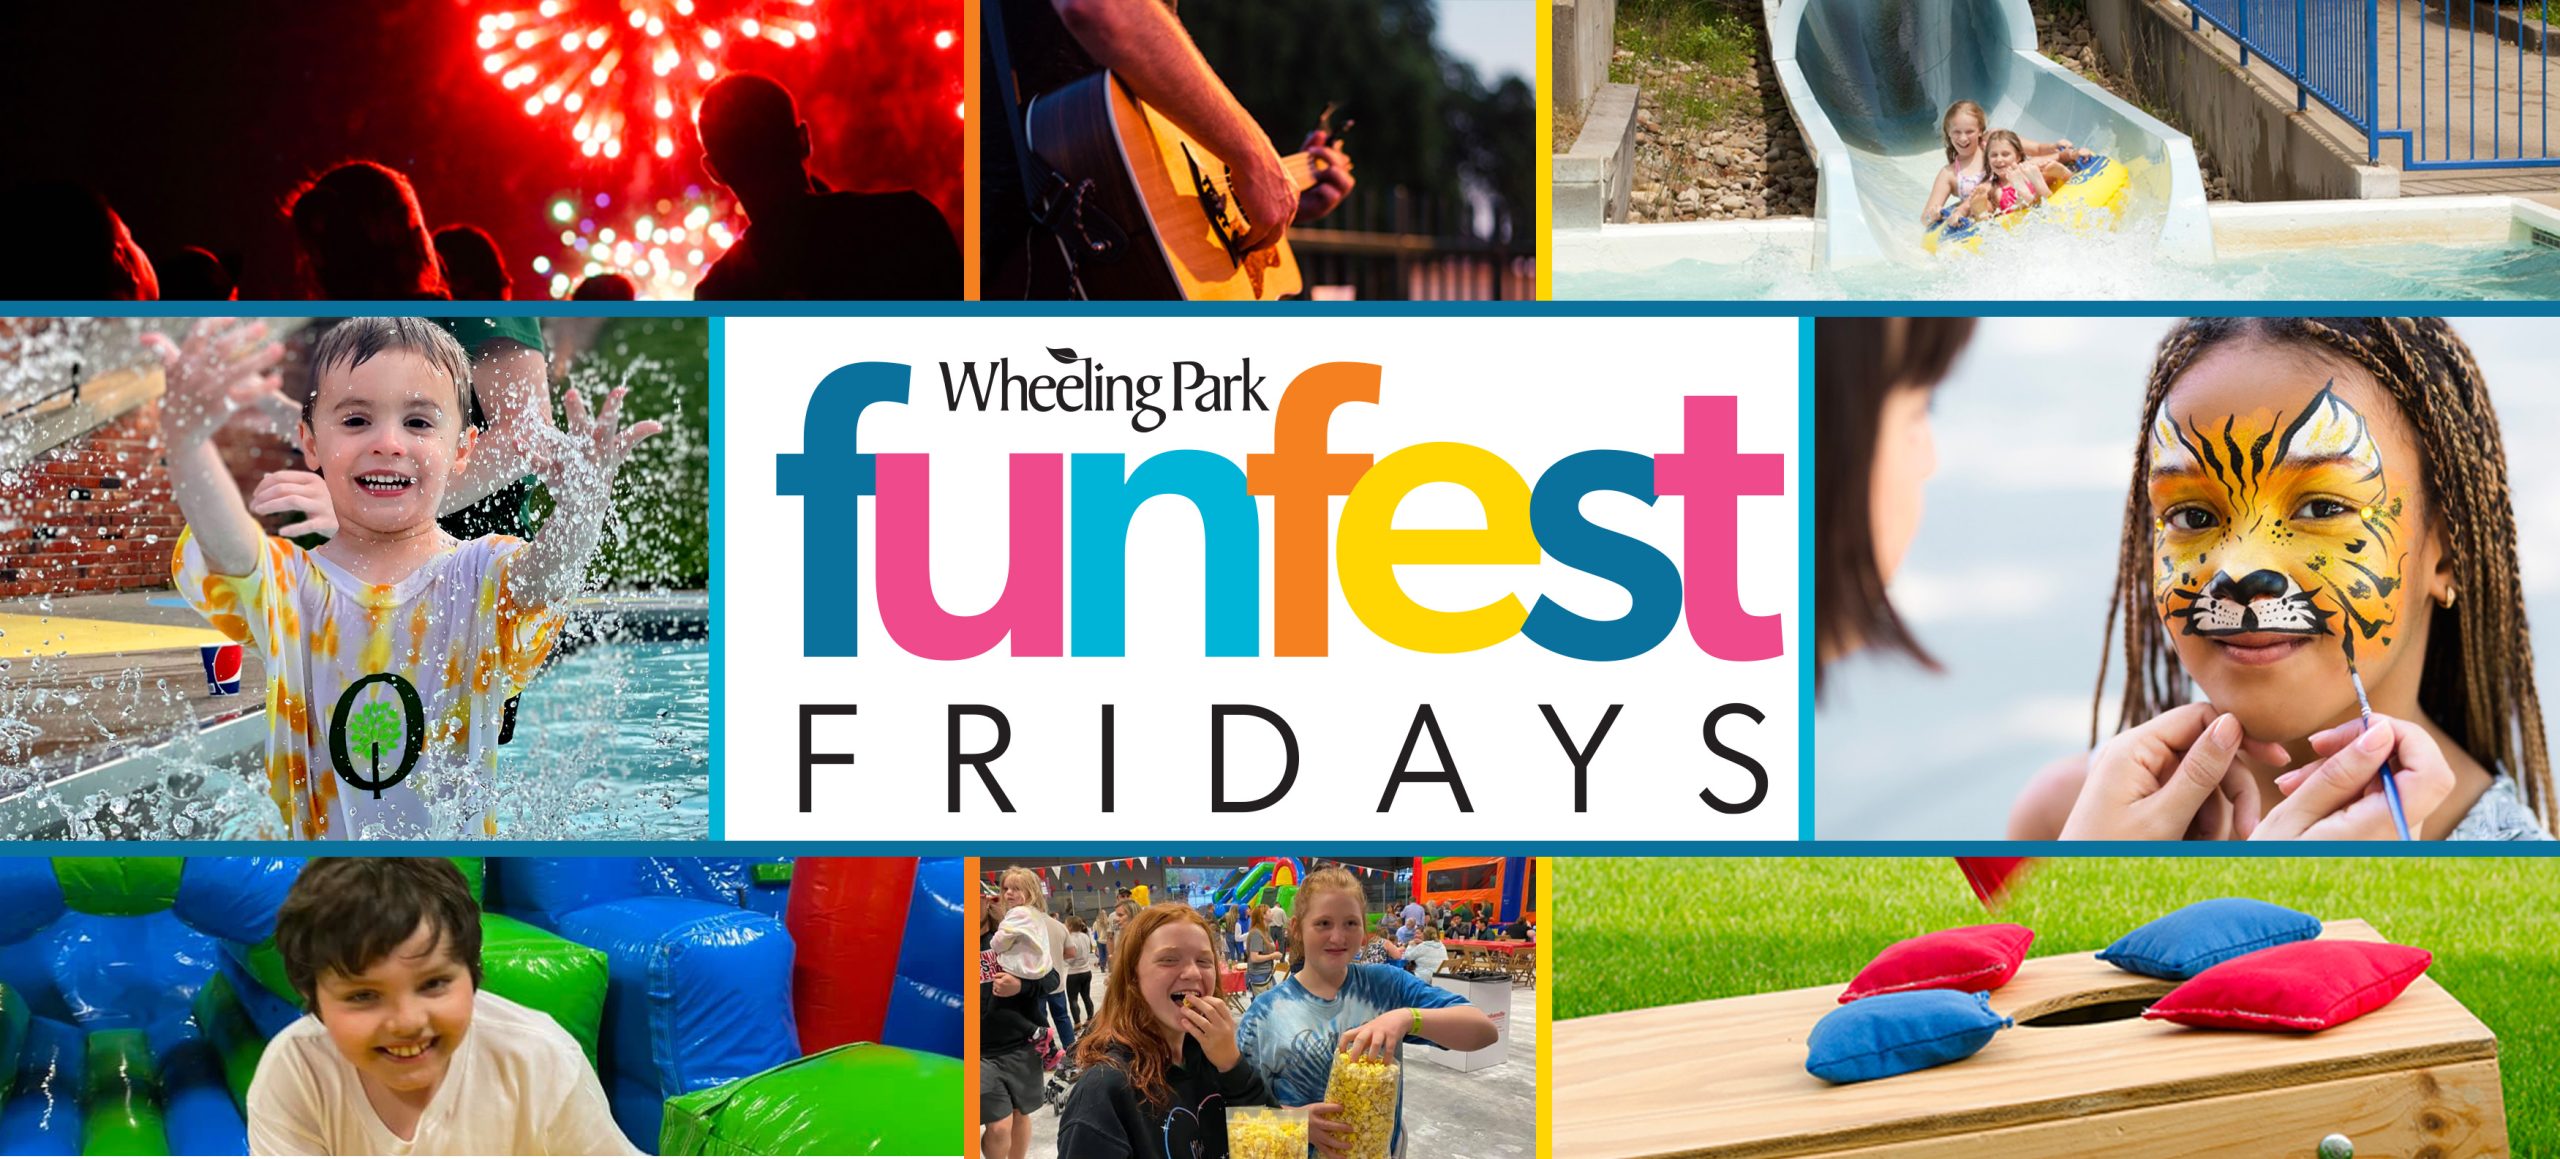 FunFest Fridays header photo